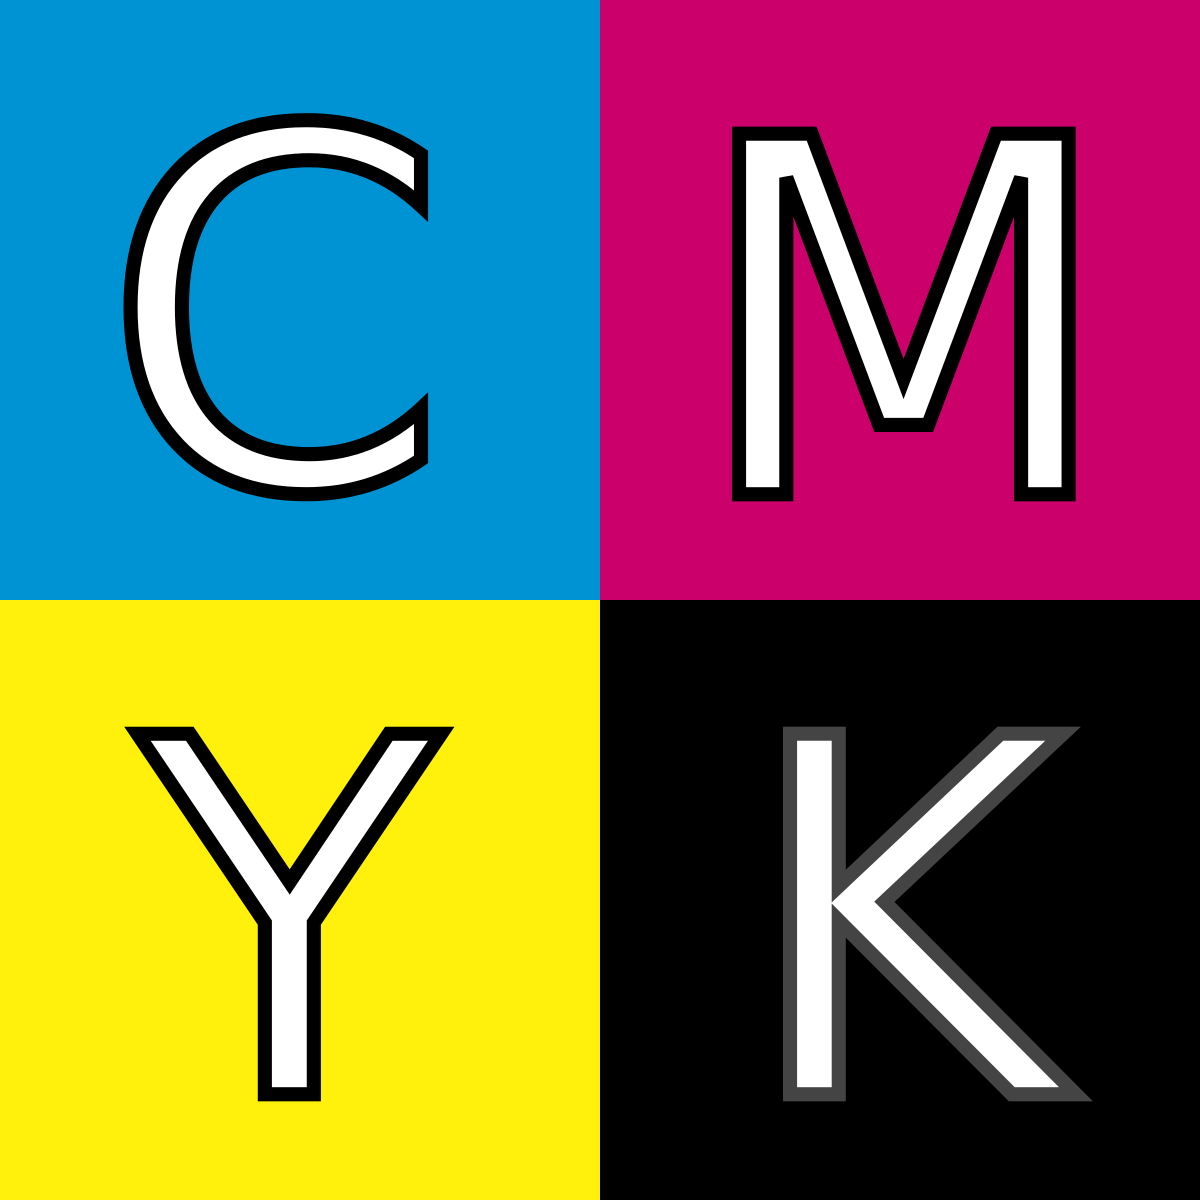 CMYK - Wikipedia